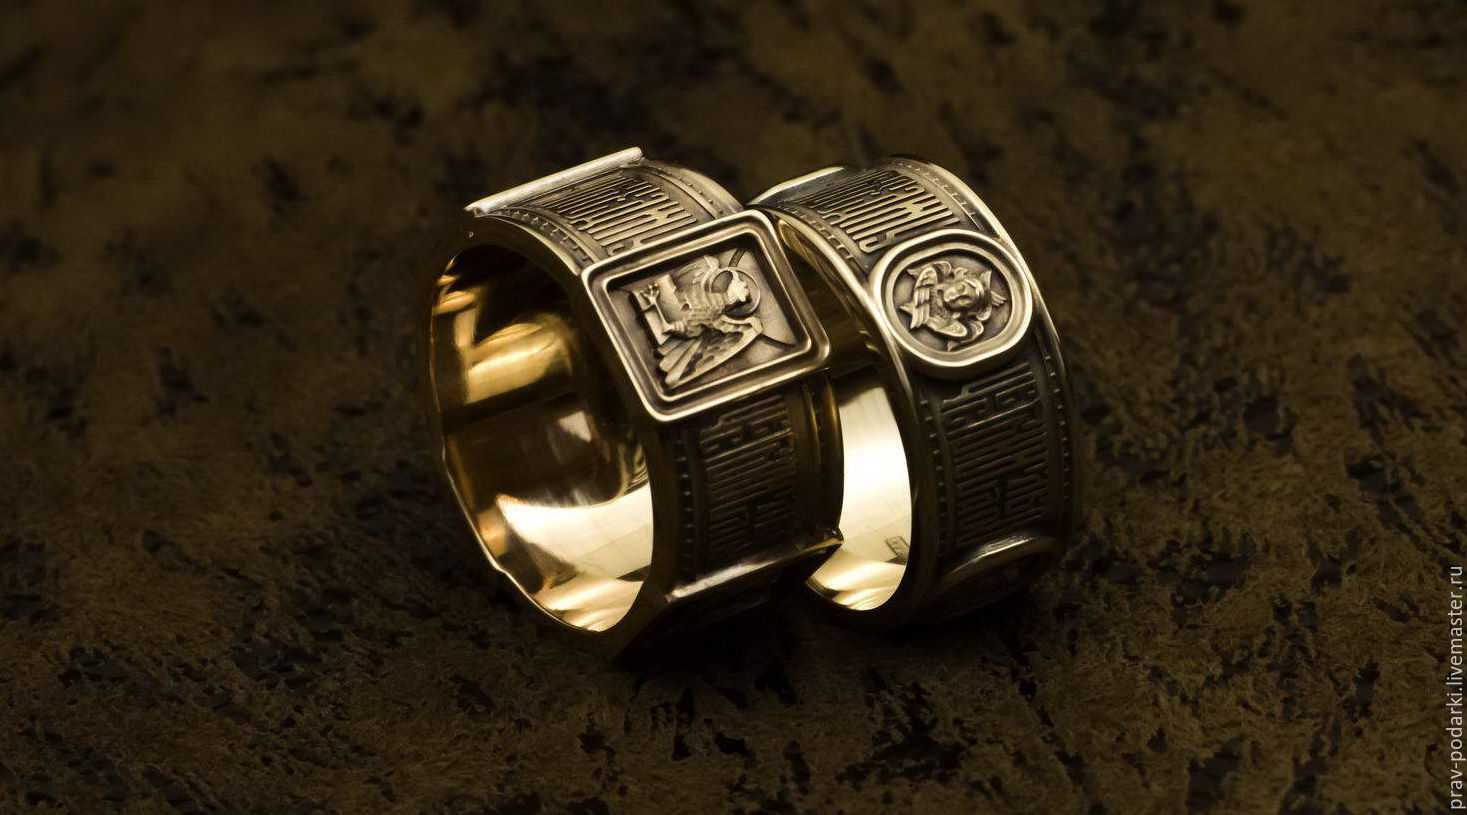 Мужское кольцо - стильный аксессуар с историей
мужское кольцо - стильный аксессуар с историей